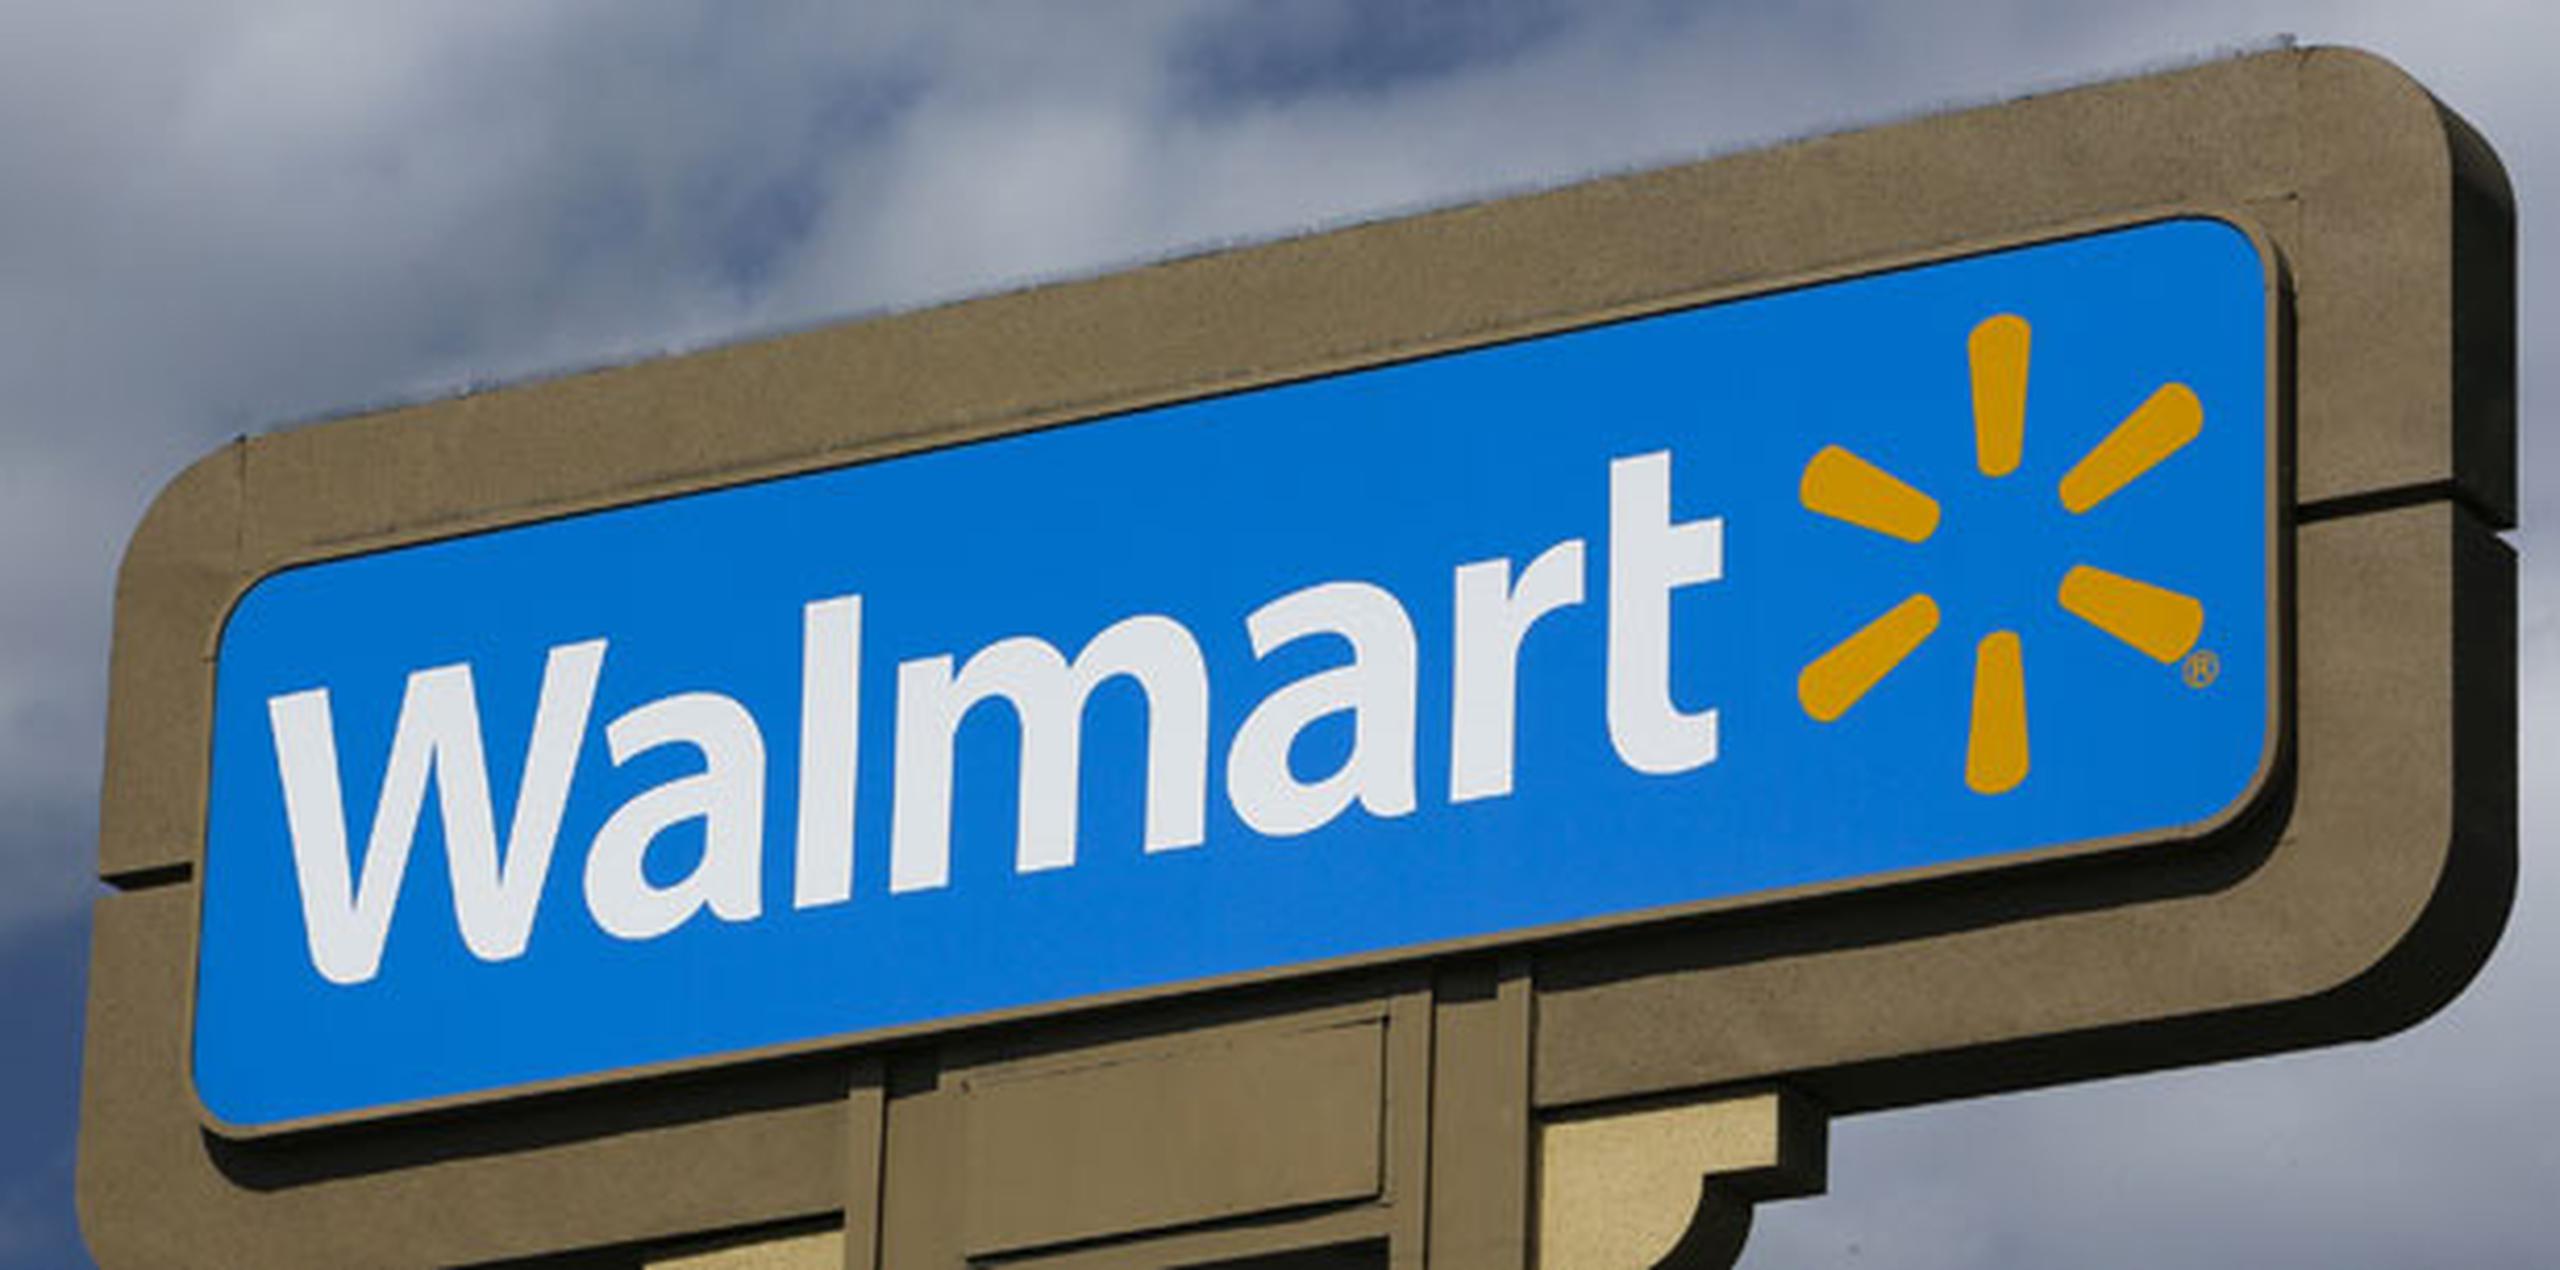 En diciembre, Wal-Mart indicó que desarrollaría su propia billetera digital, en vez de usar sistemas existentes de Apple y otros, aunque la compañía de tiendas minoristas agregó que no descarta usar billeteras de terceros en el futuro. (Archivo)